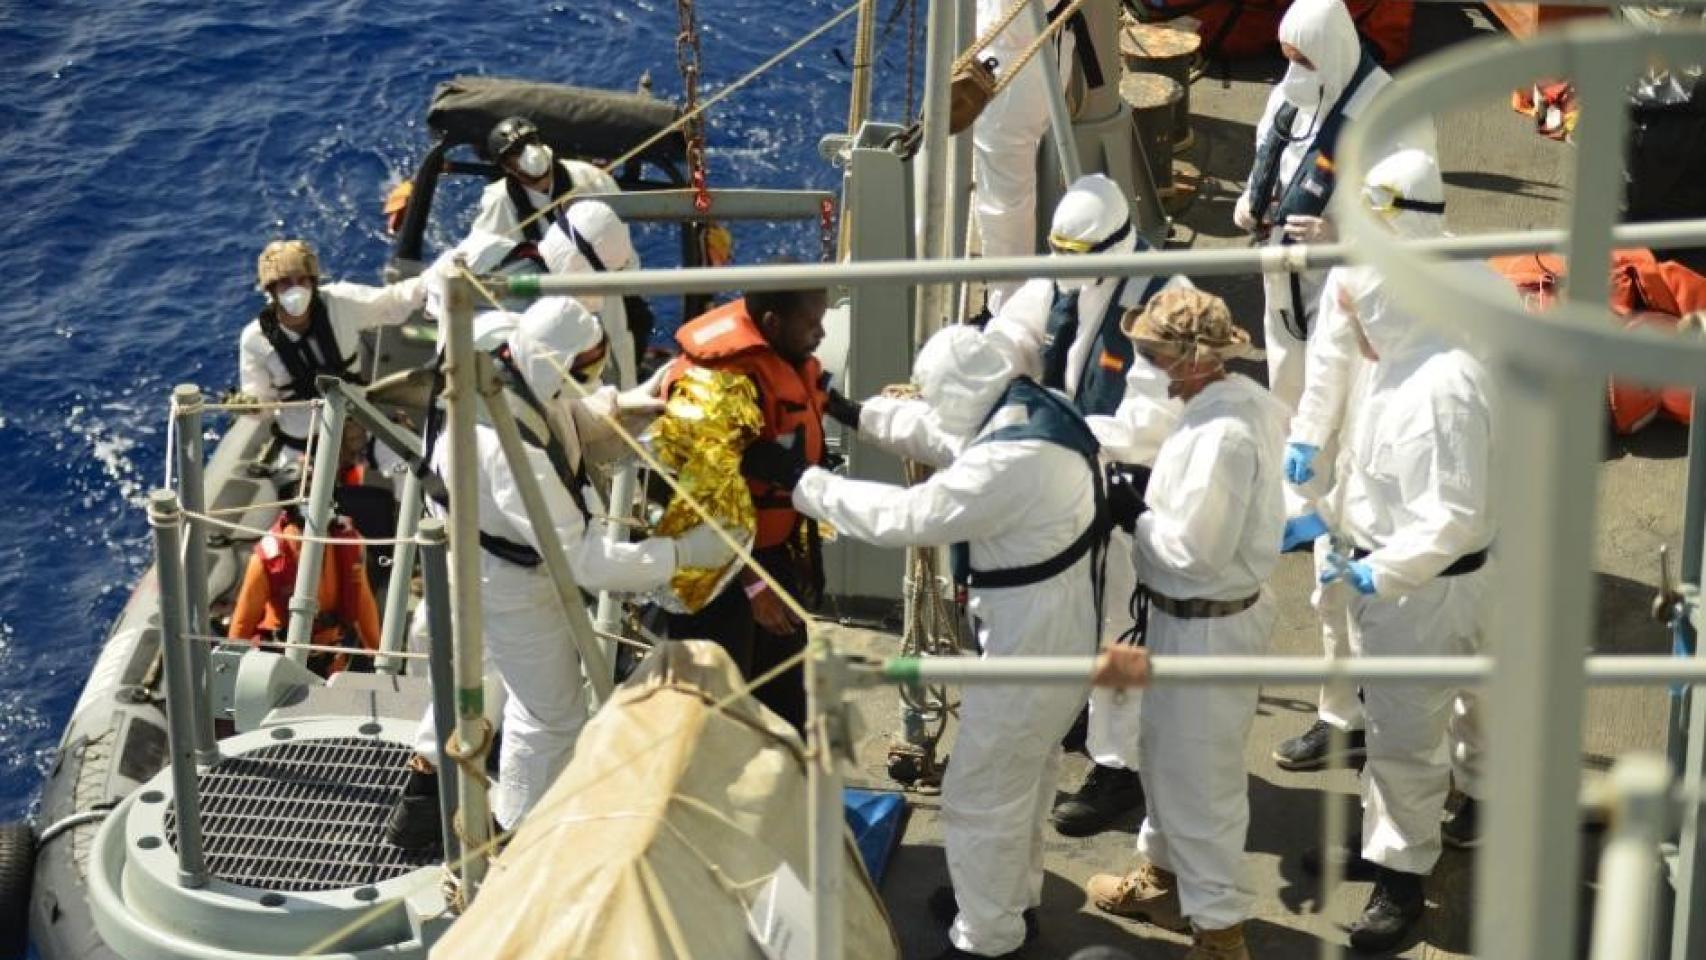 Imagen del rescate efectuado por la Numancia en aguas del Mediterráneo.